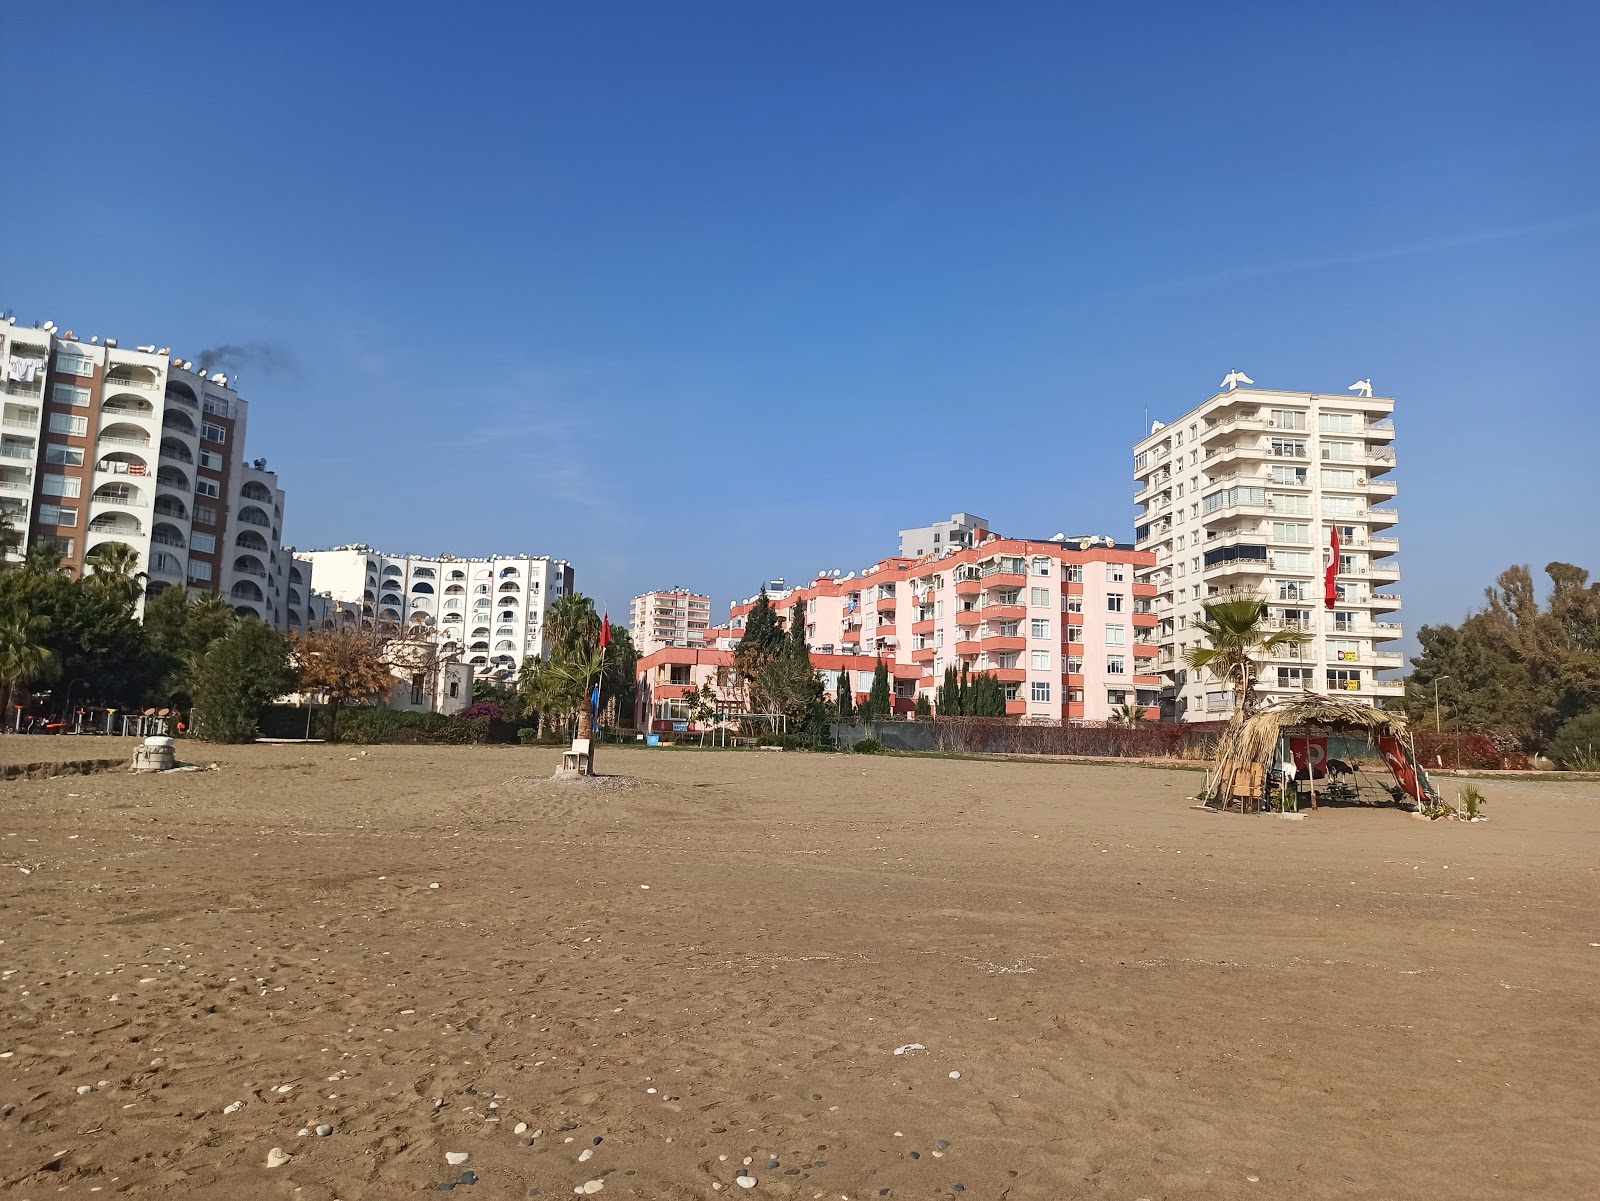 Foto av Soli beach med hög nivå av renlighet